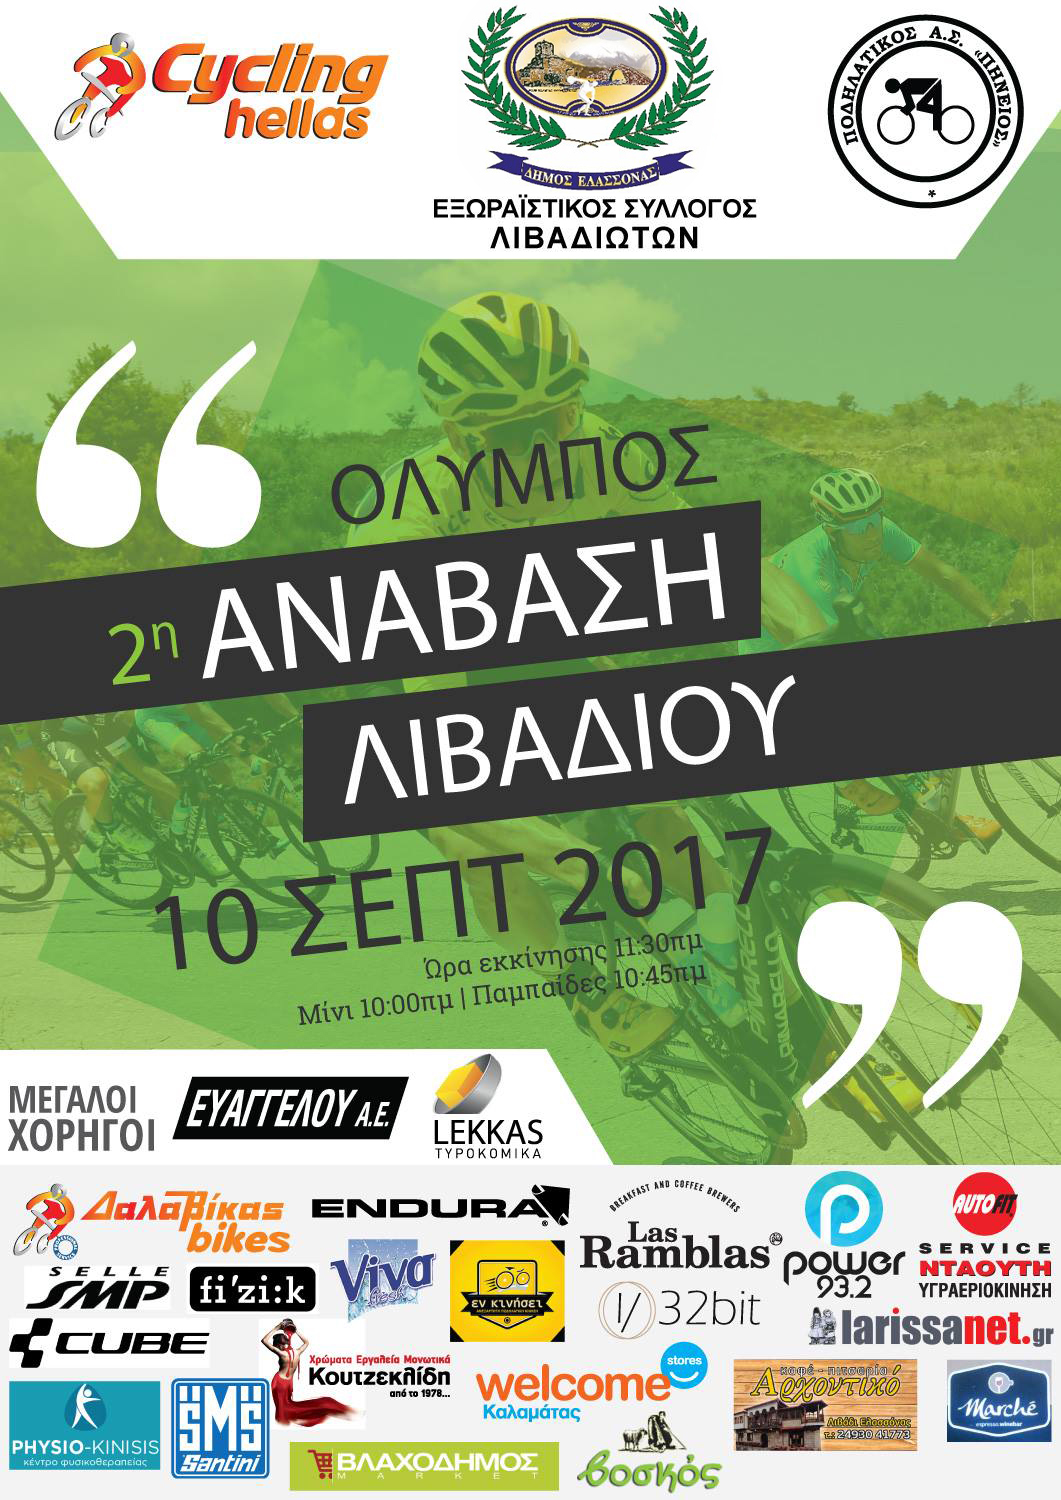 ΠΡΟΚΗΡΥΞΗ 2η Ανάβαση Λιβαδίου 2017 (Όλυμπος)